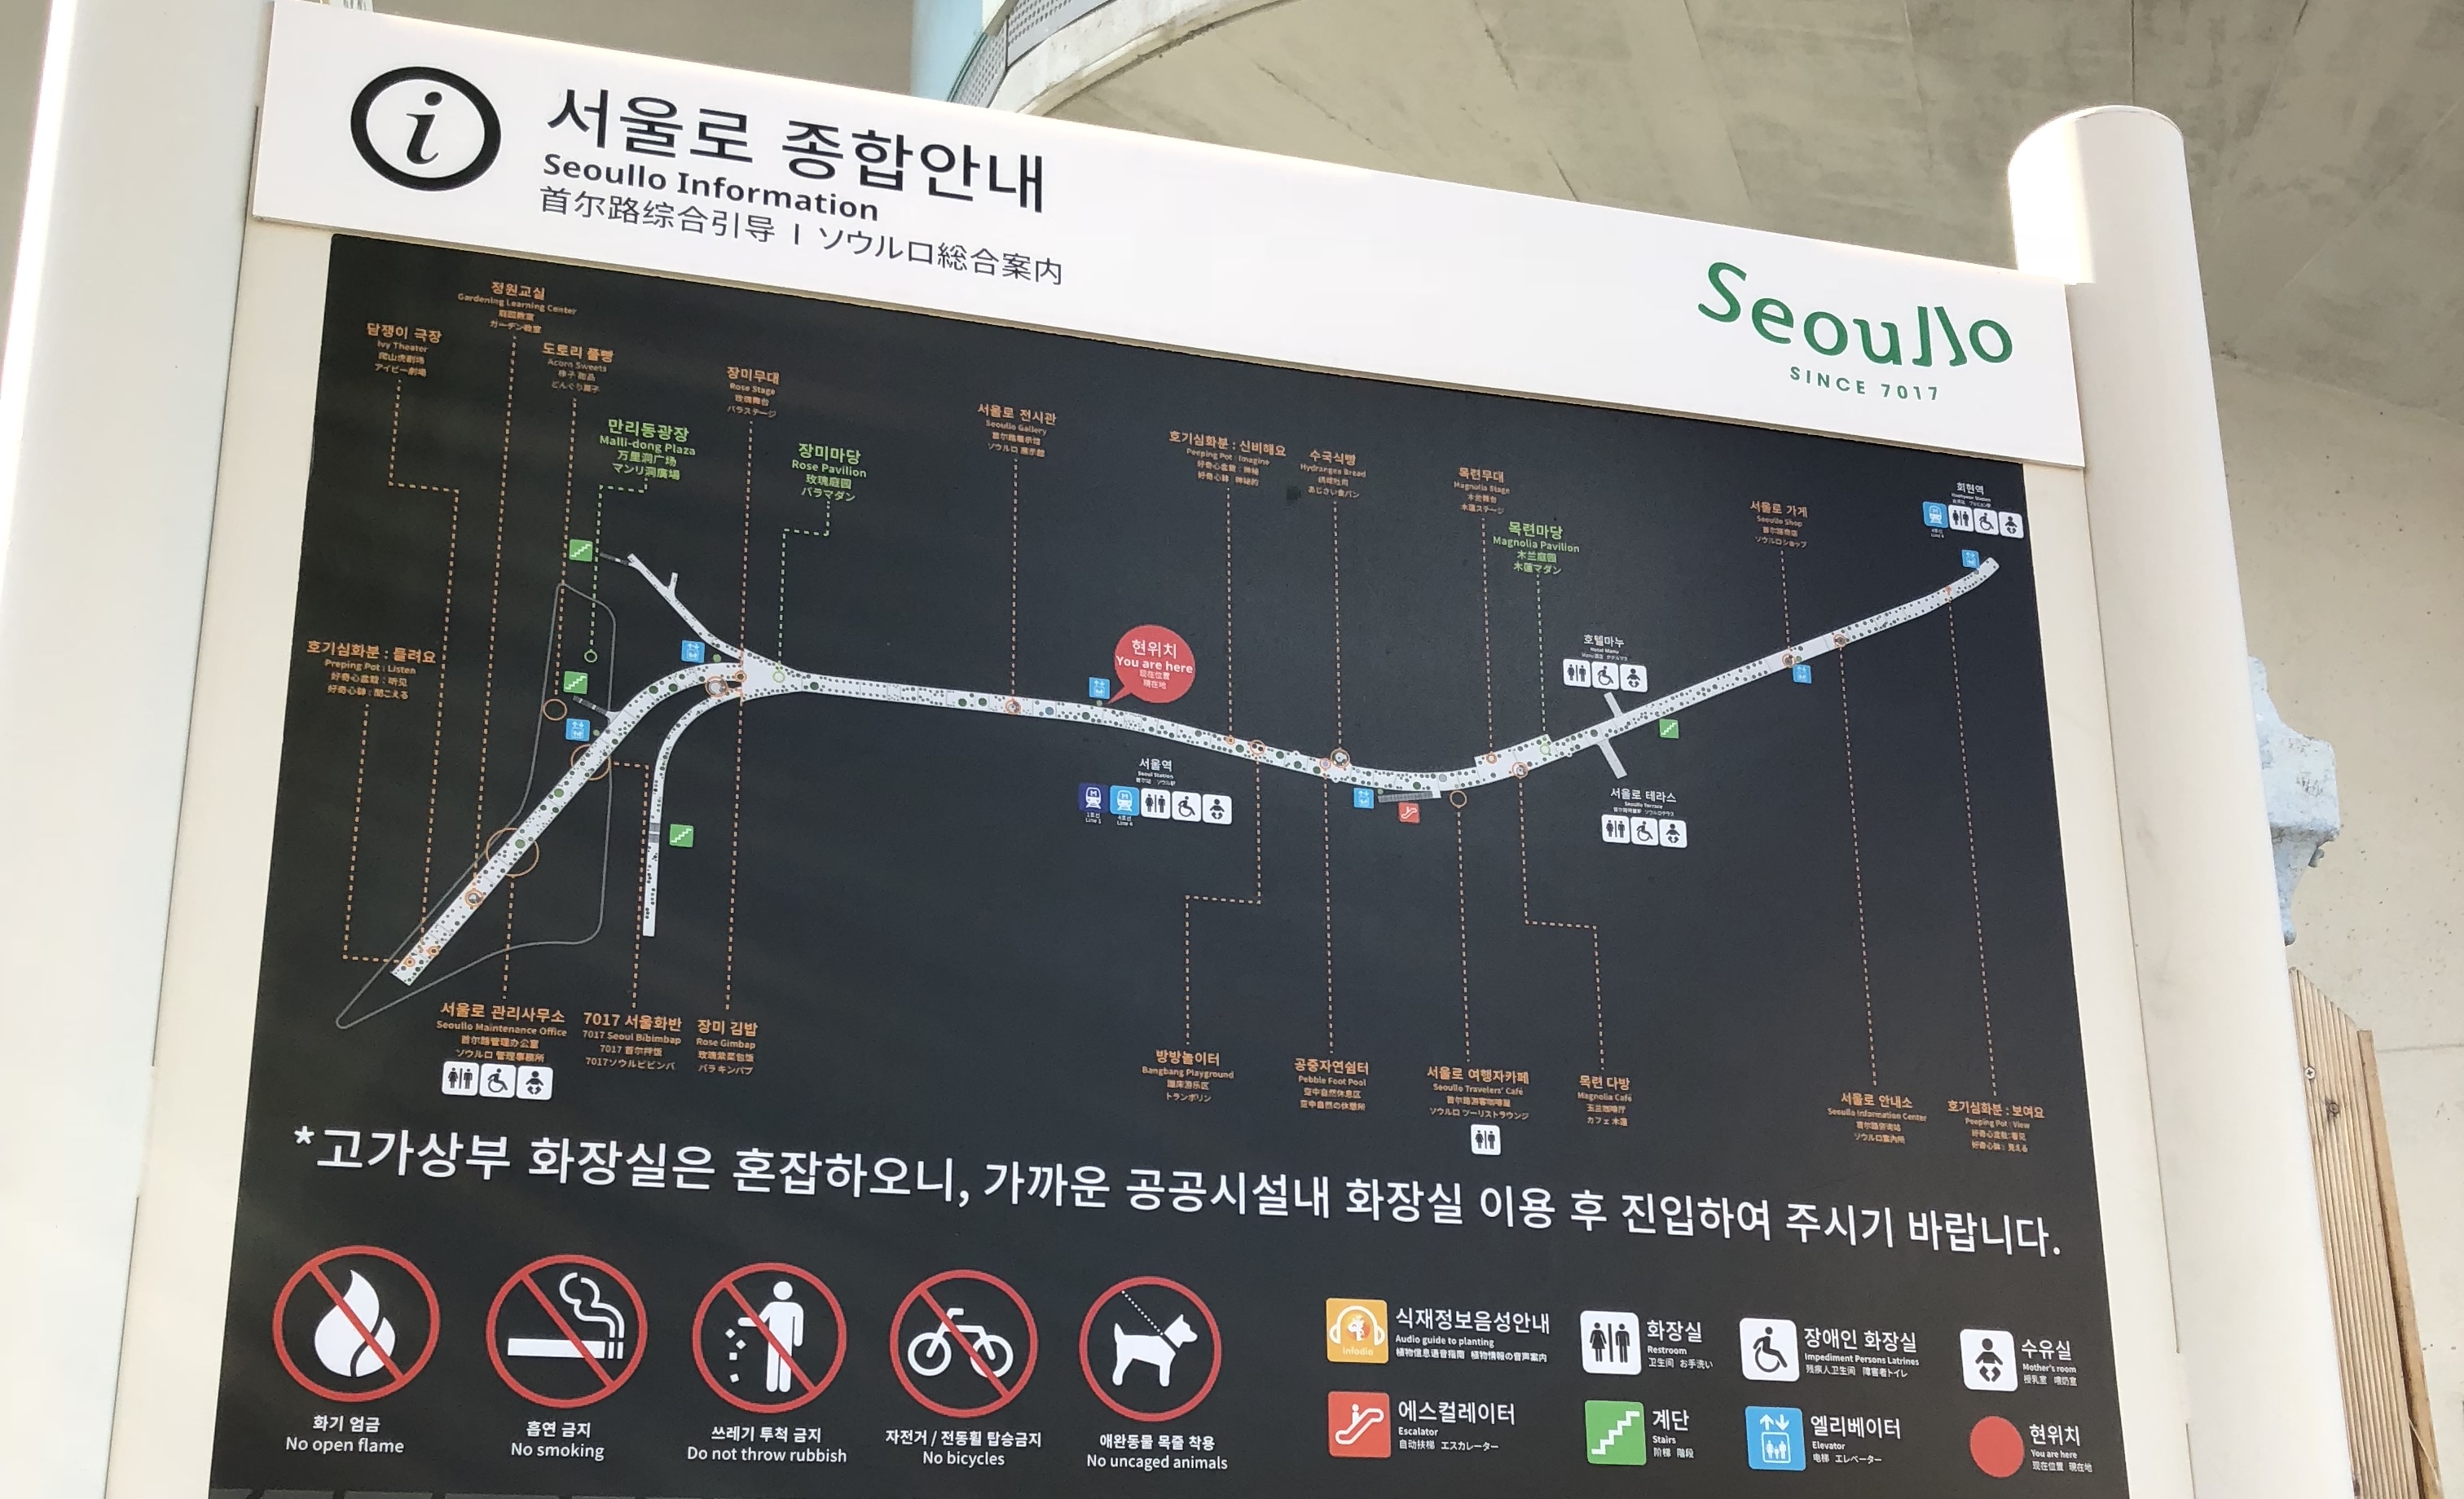 Seoul21